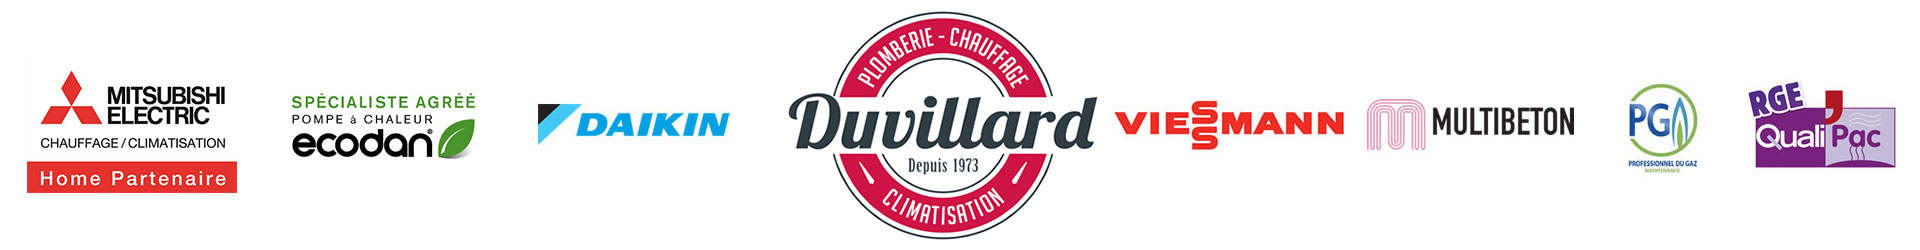 logo-duvillard